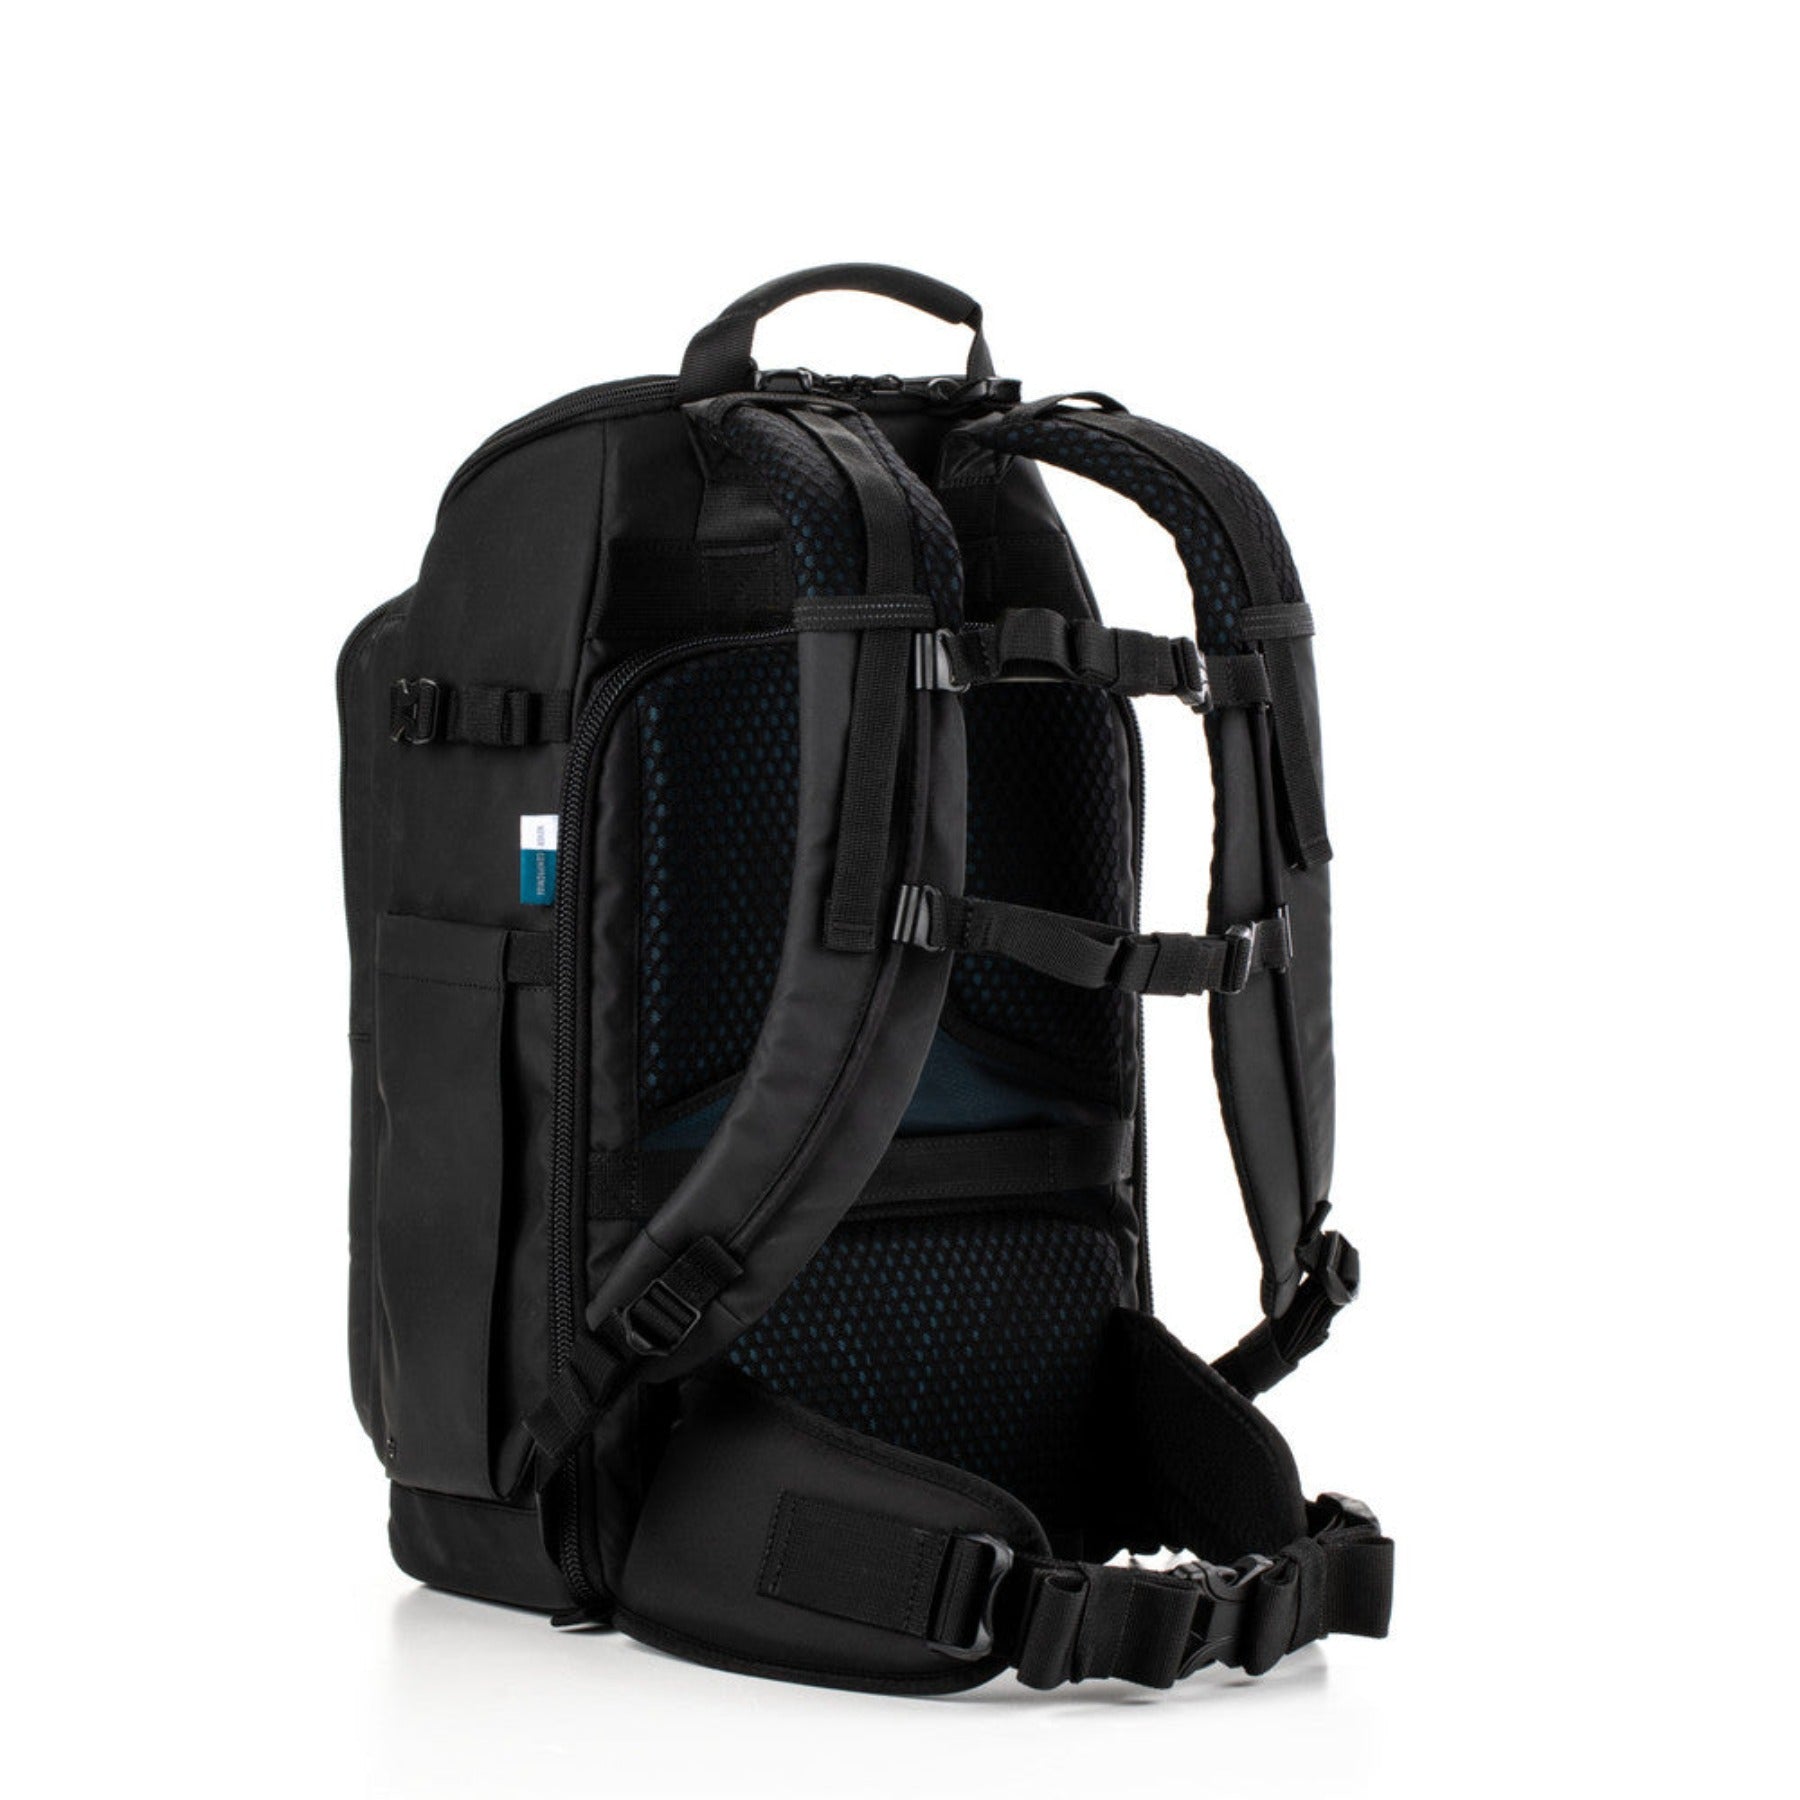 Tenba Axis v2 LT 20L Backpack – MultiCam Black